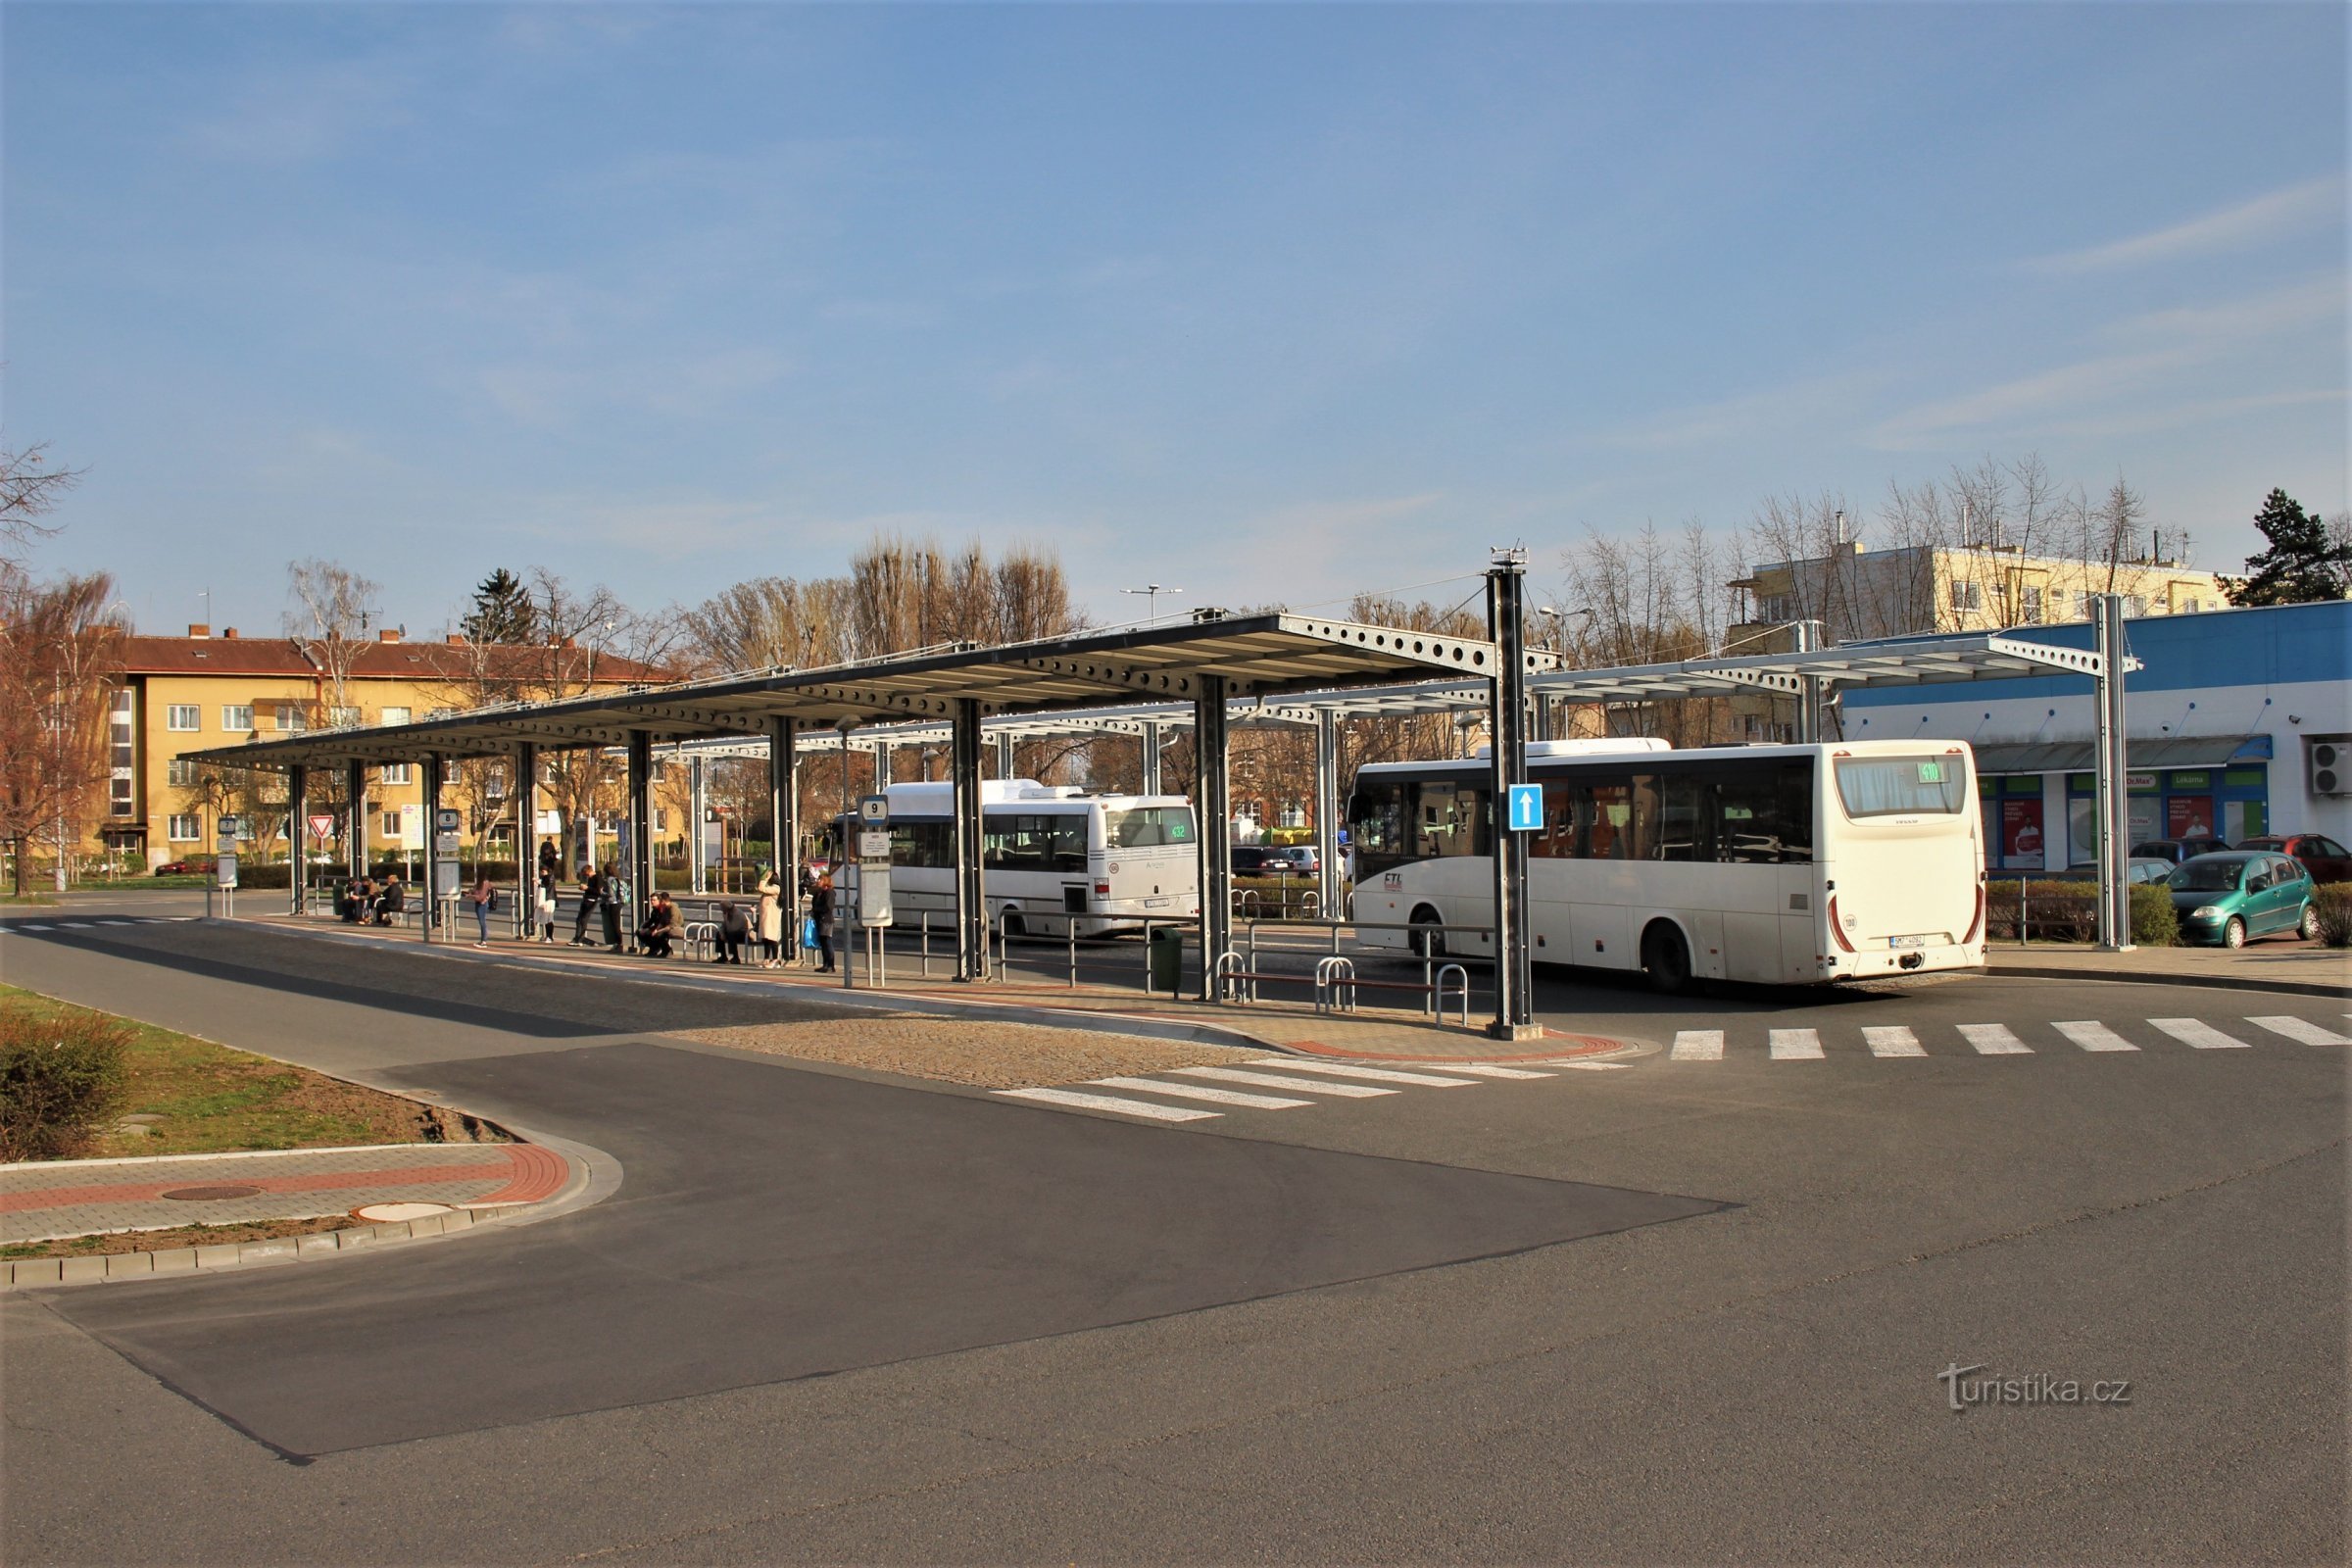 Prostějov - bus station